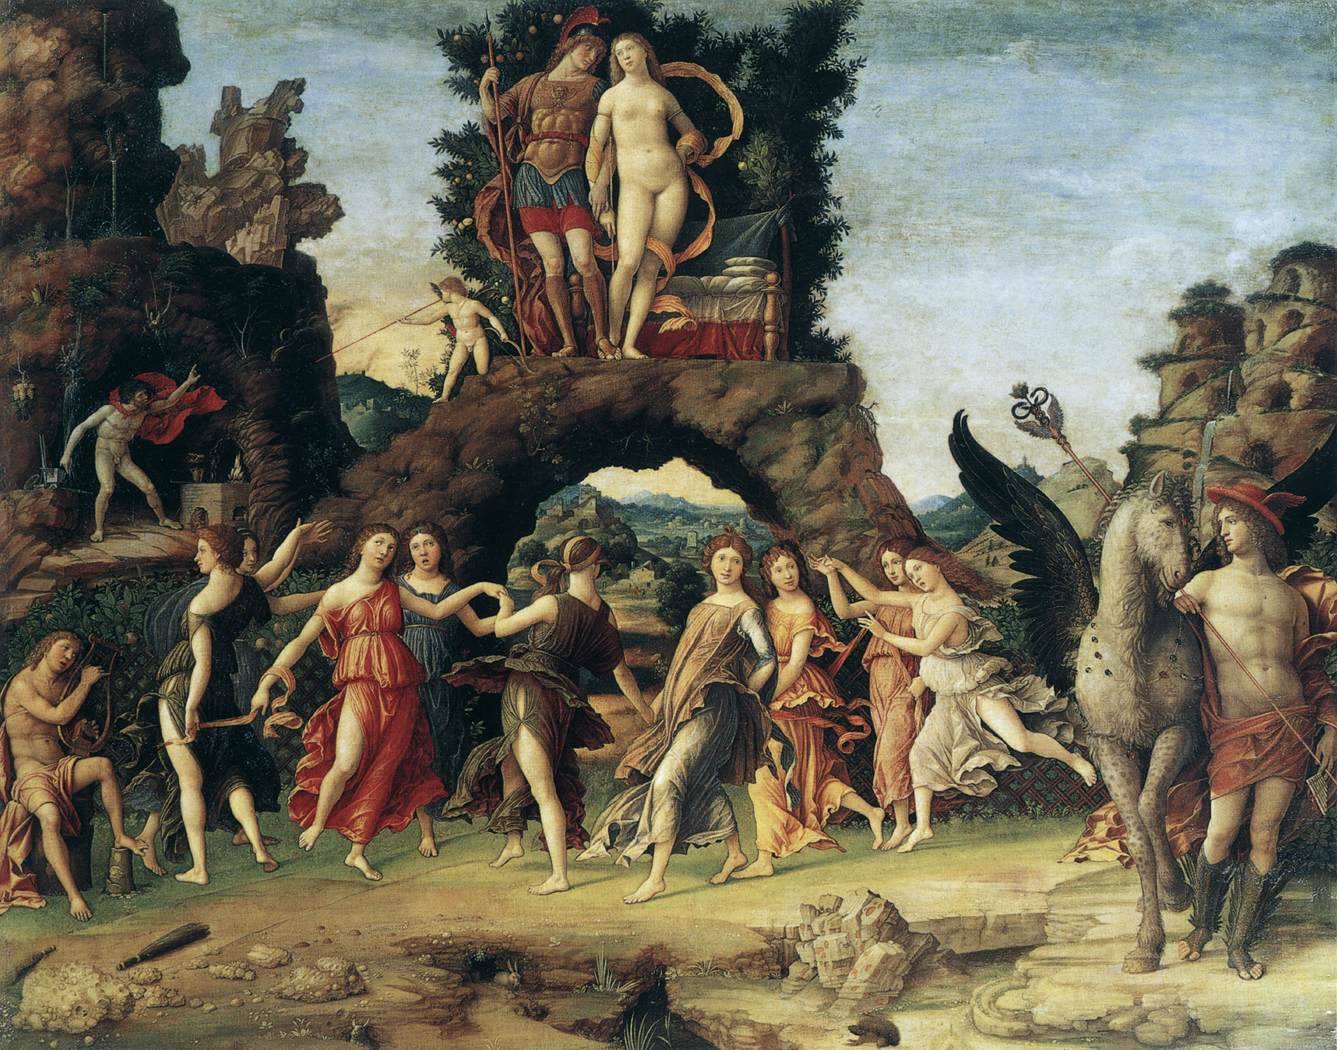 MANTEGNA, Andrea, Andrea Mantegna, "Parnassus", 1497, Musée du Louvre, Paris.